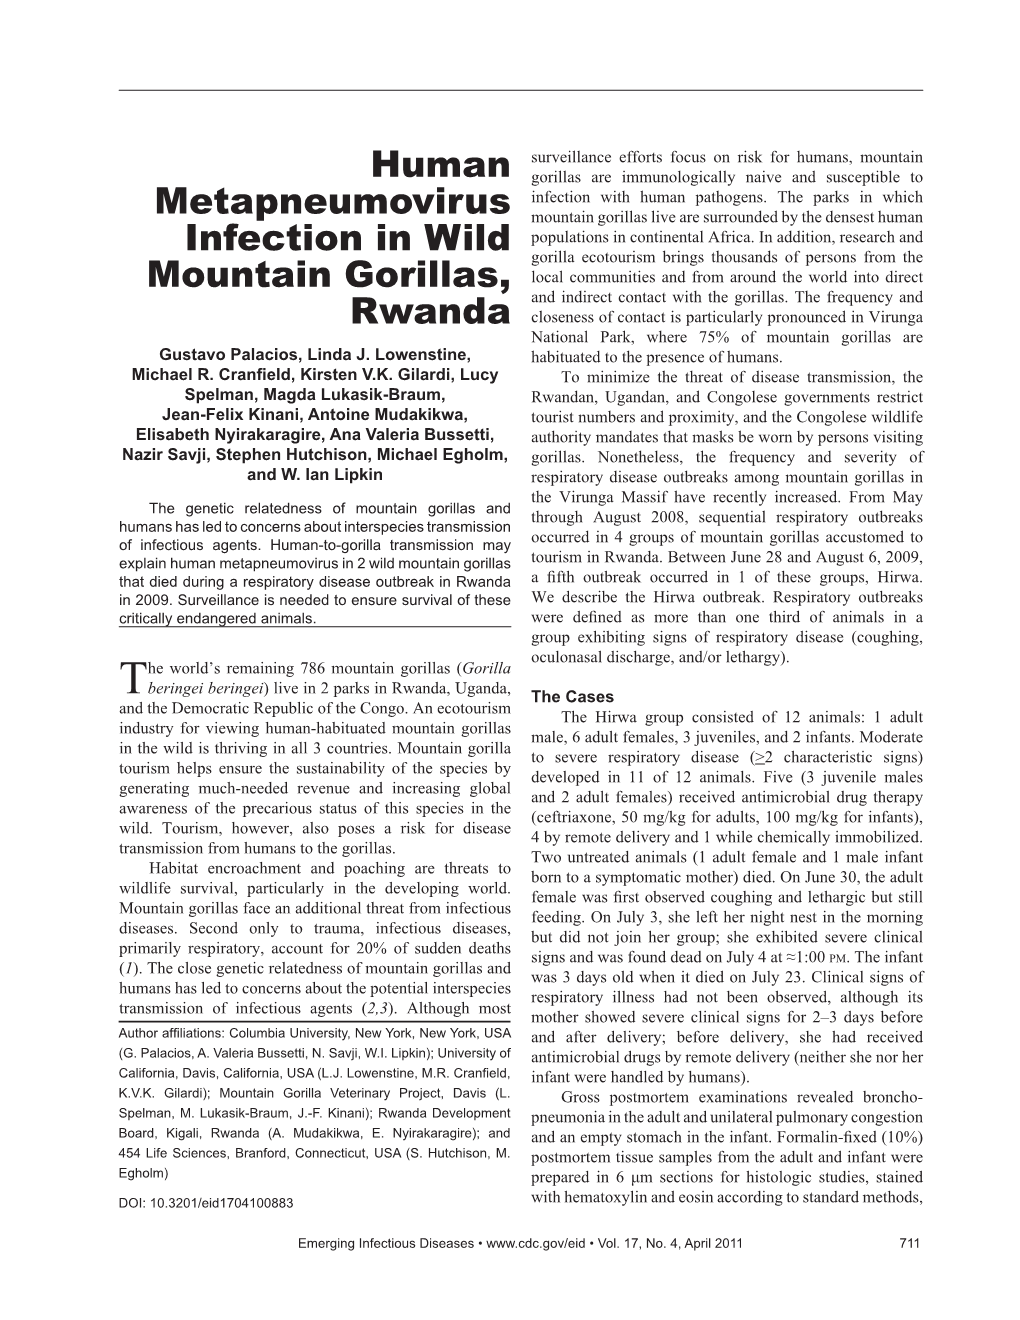 Human Metapneumovirus Infection in Wild Mountain Gorillas, Rwanda